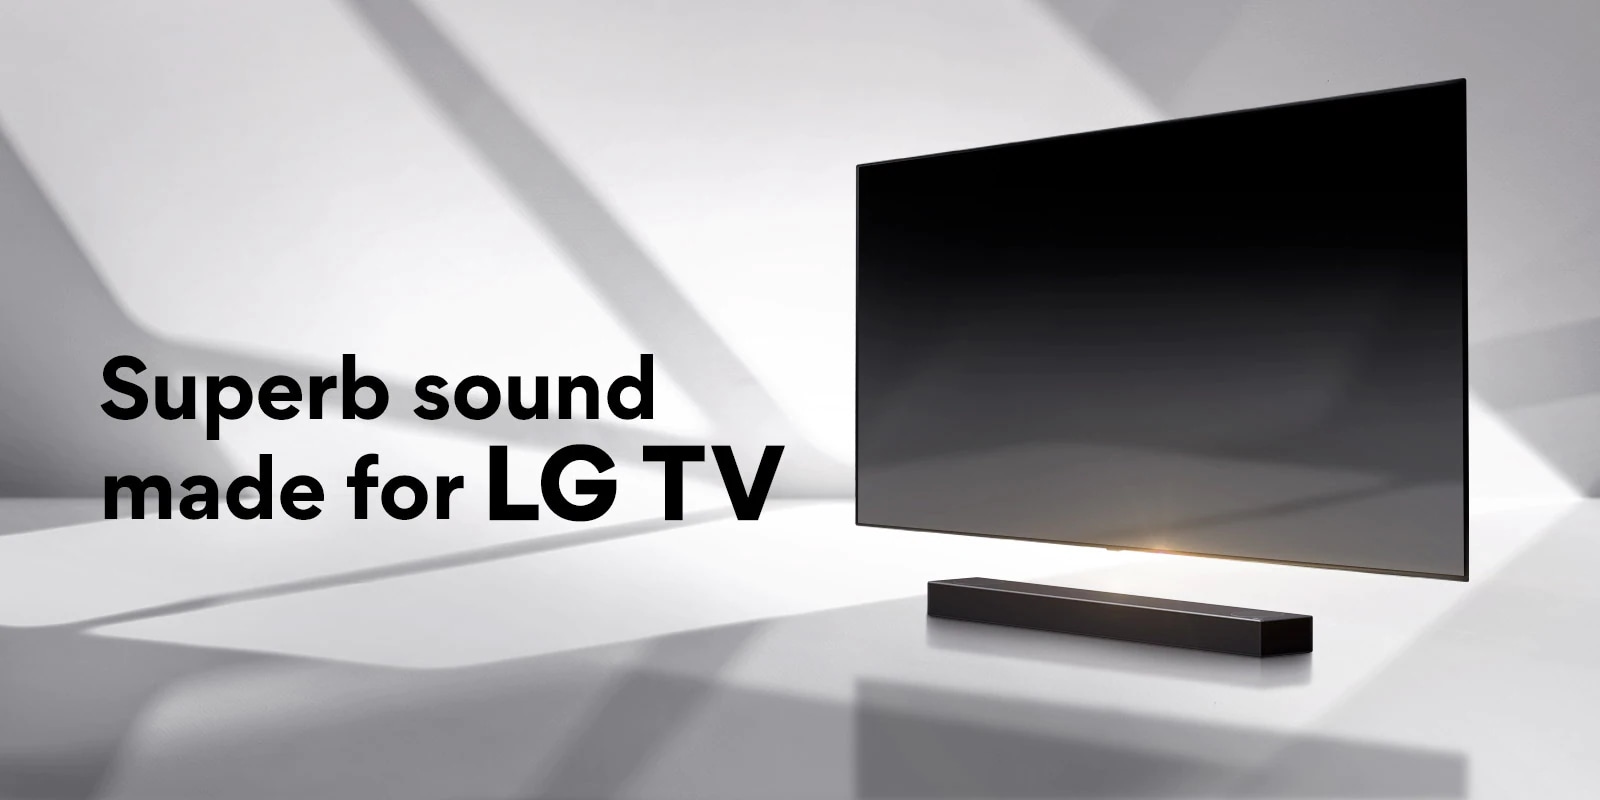 Superb sound, made for LG TV